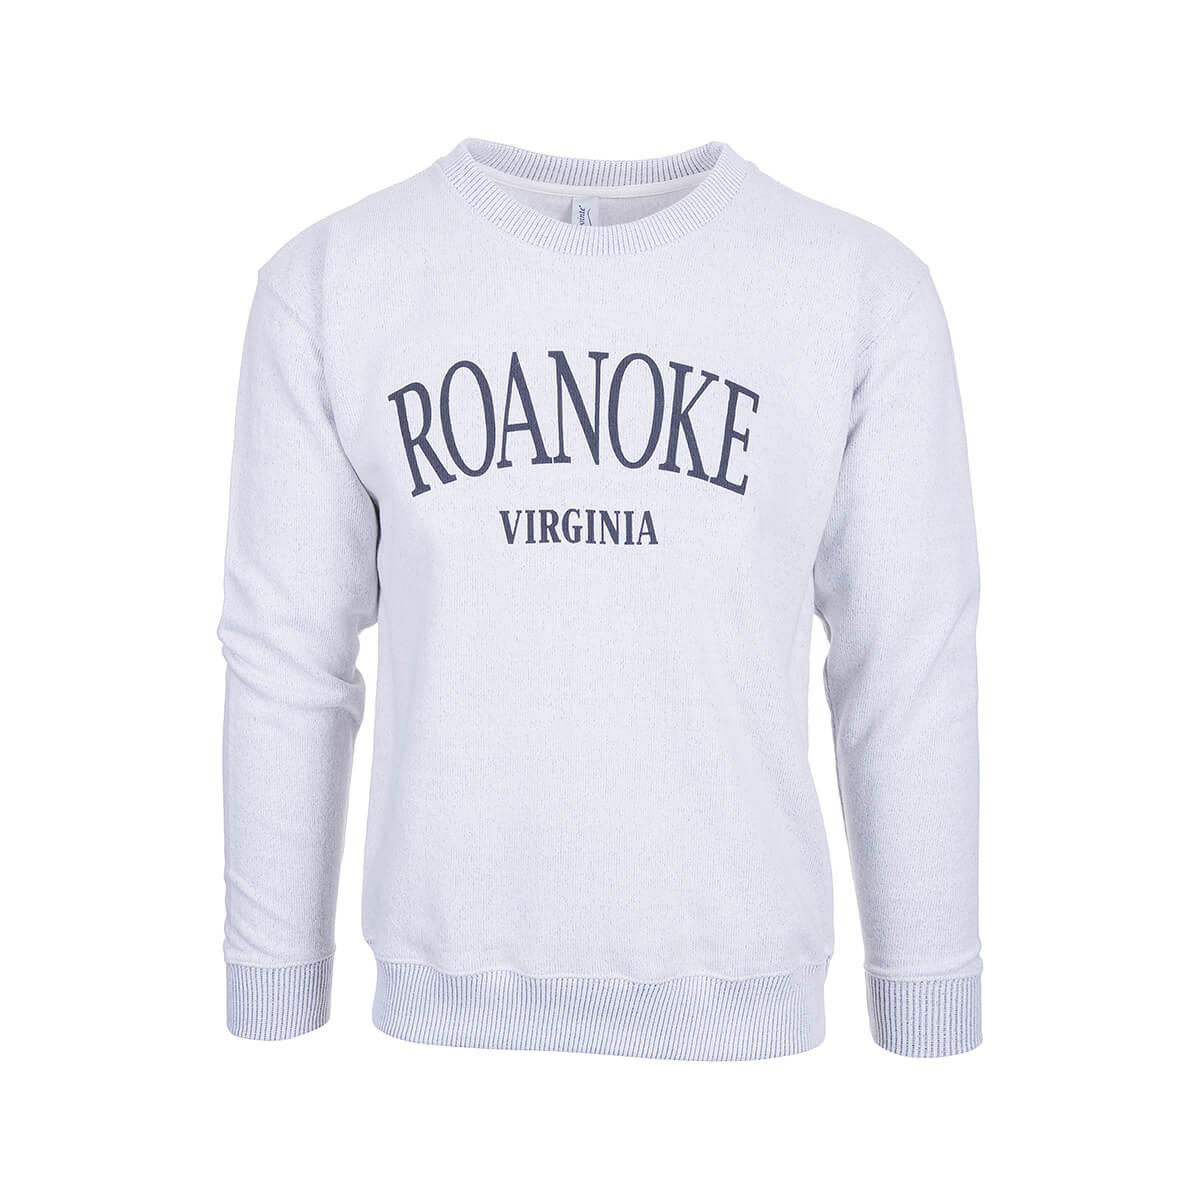  Roanoke Nantucket Crew Neck Long Sleeve Sweatshirt